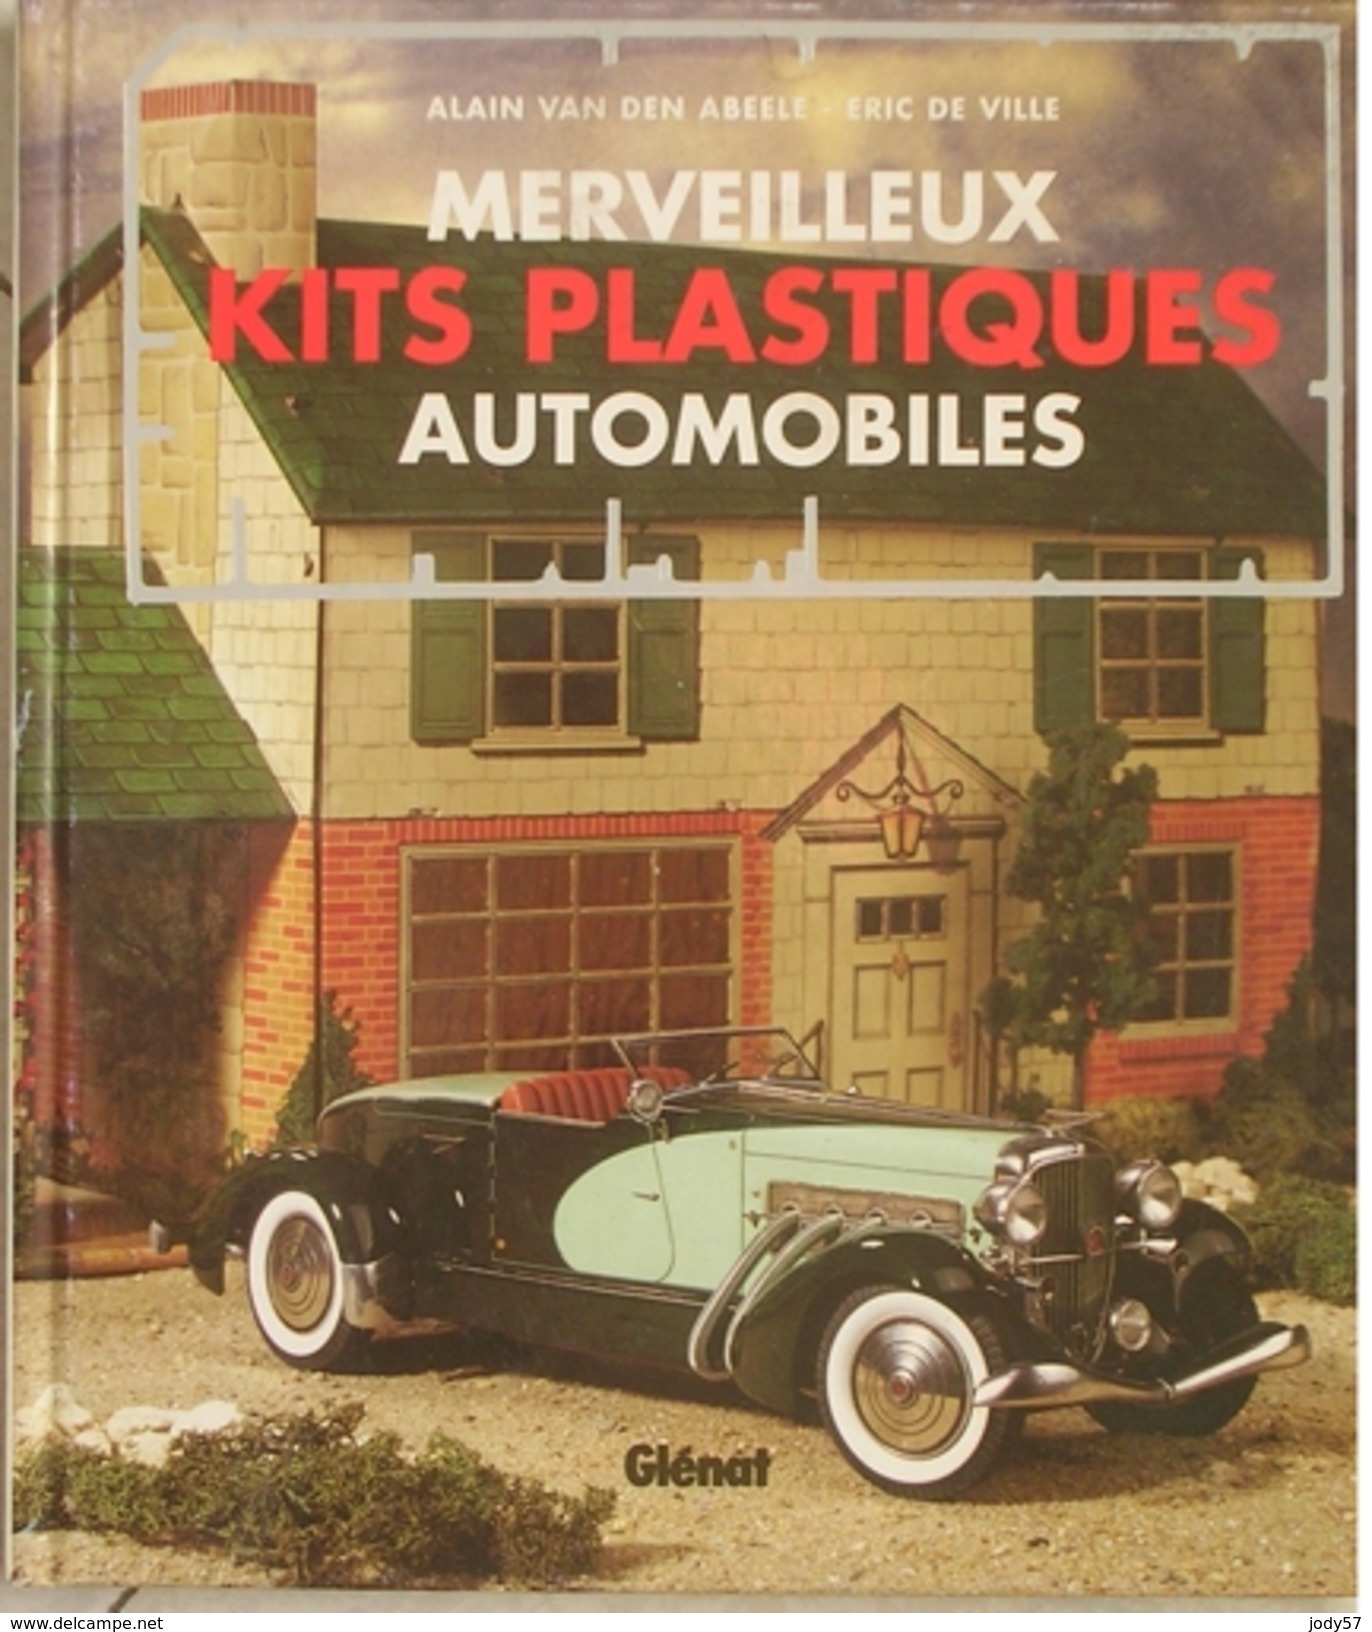 MERVEILLEUX KITS PLASTIQUES AUTOMOBILES - VAN DEN ABEELE - DE VILLE - GLENAT - 1994 - Model Making